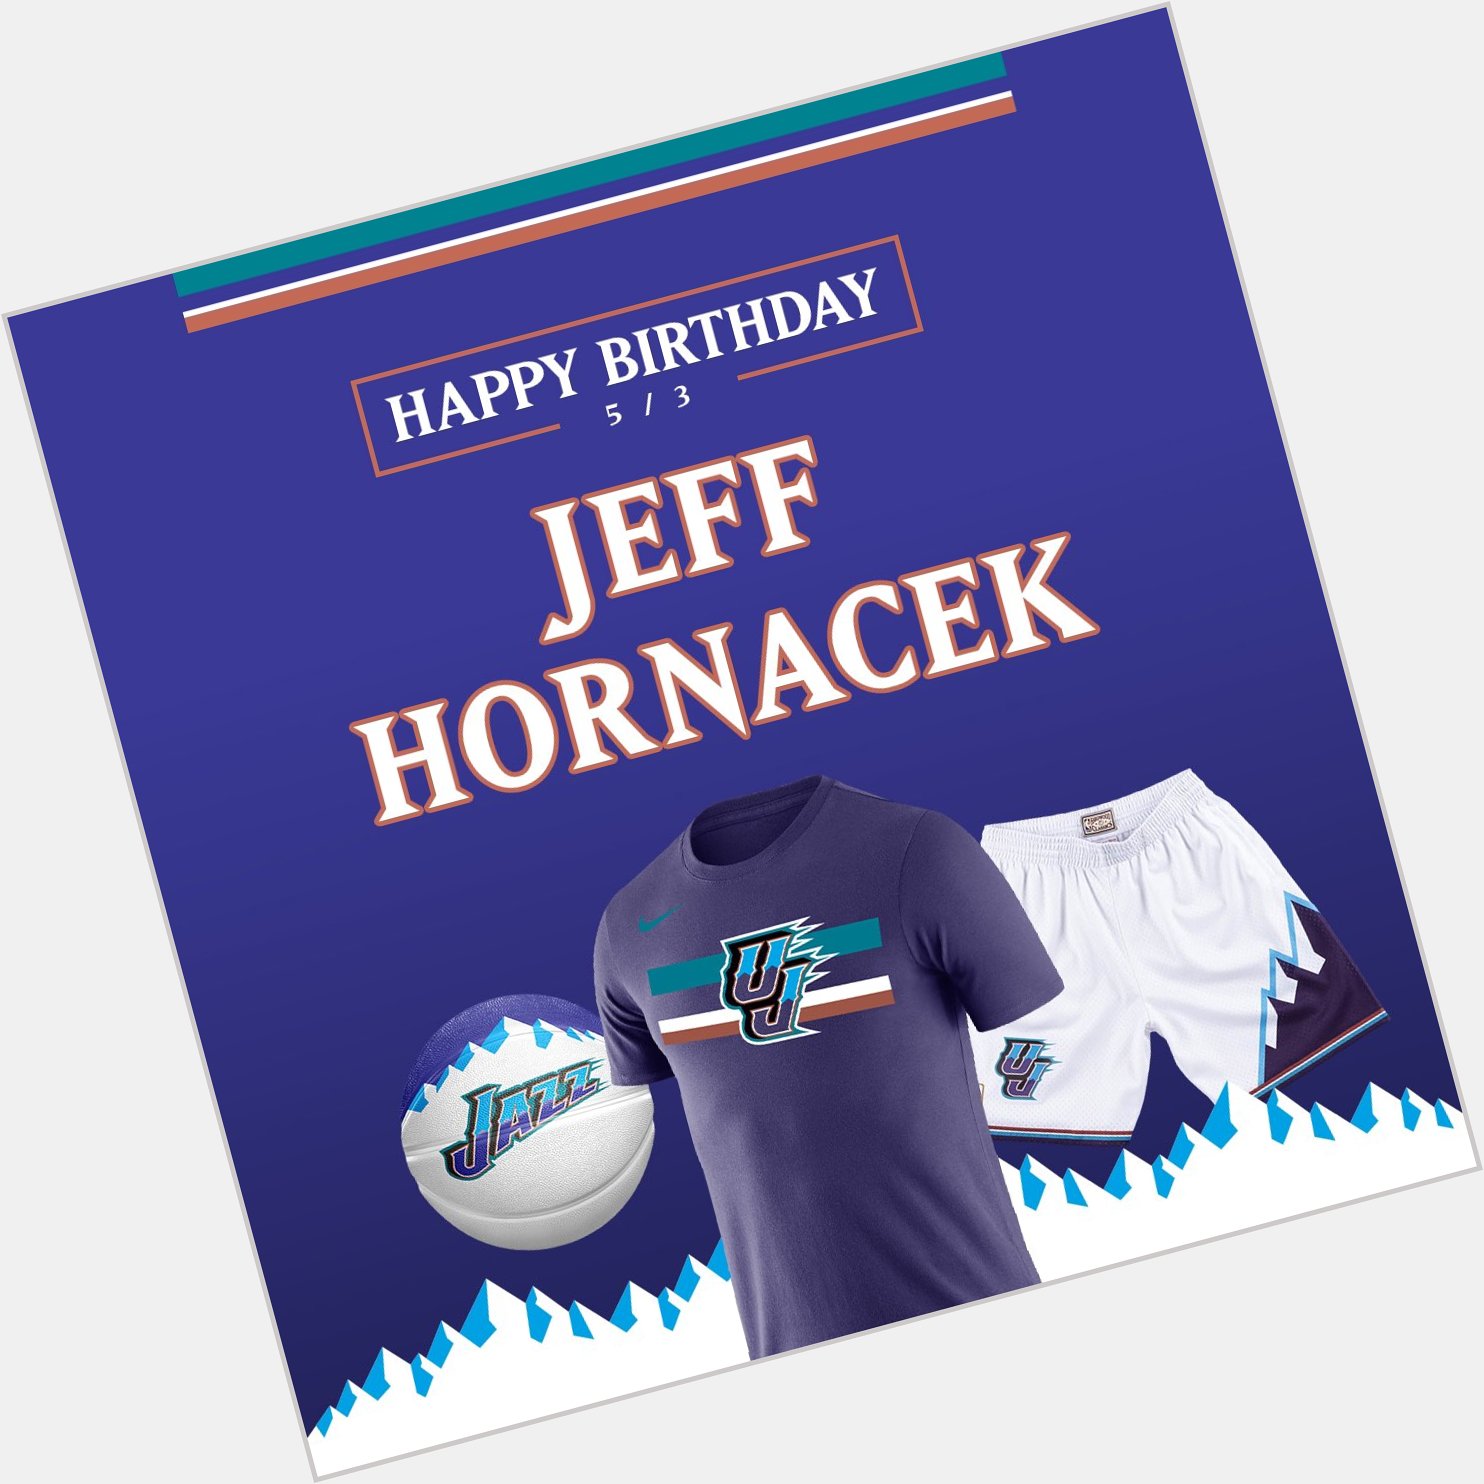  Happy Birthday Jeff Hornacek     